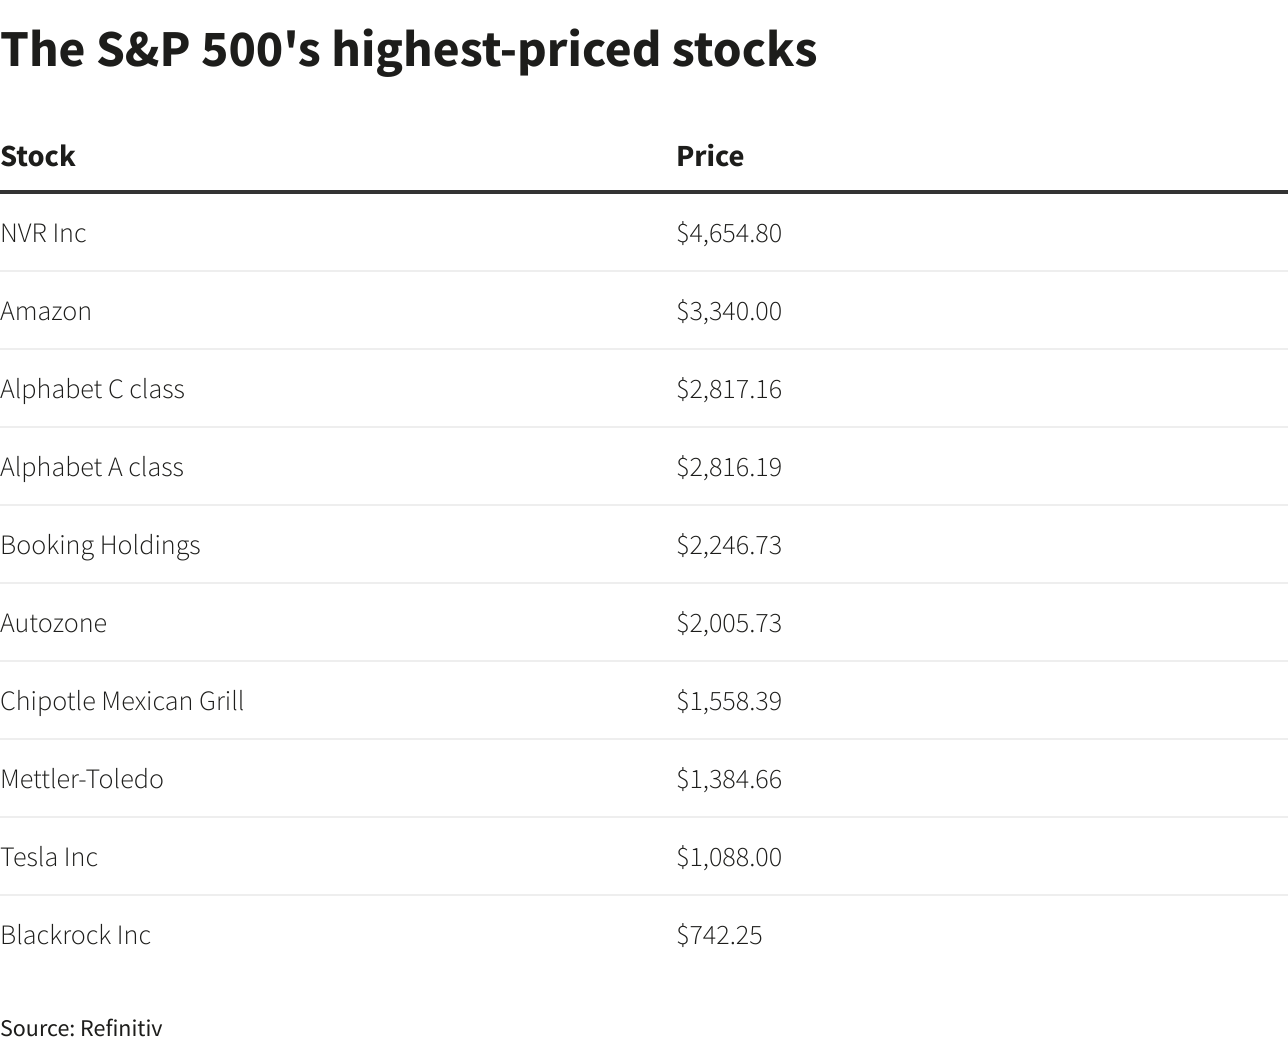 Las acciones mejor cotizadas del S&P 500